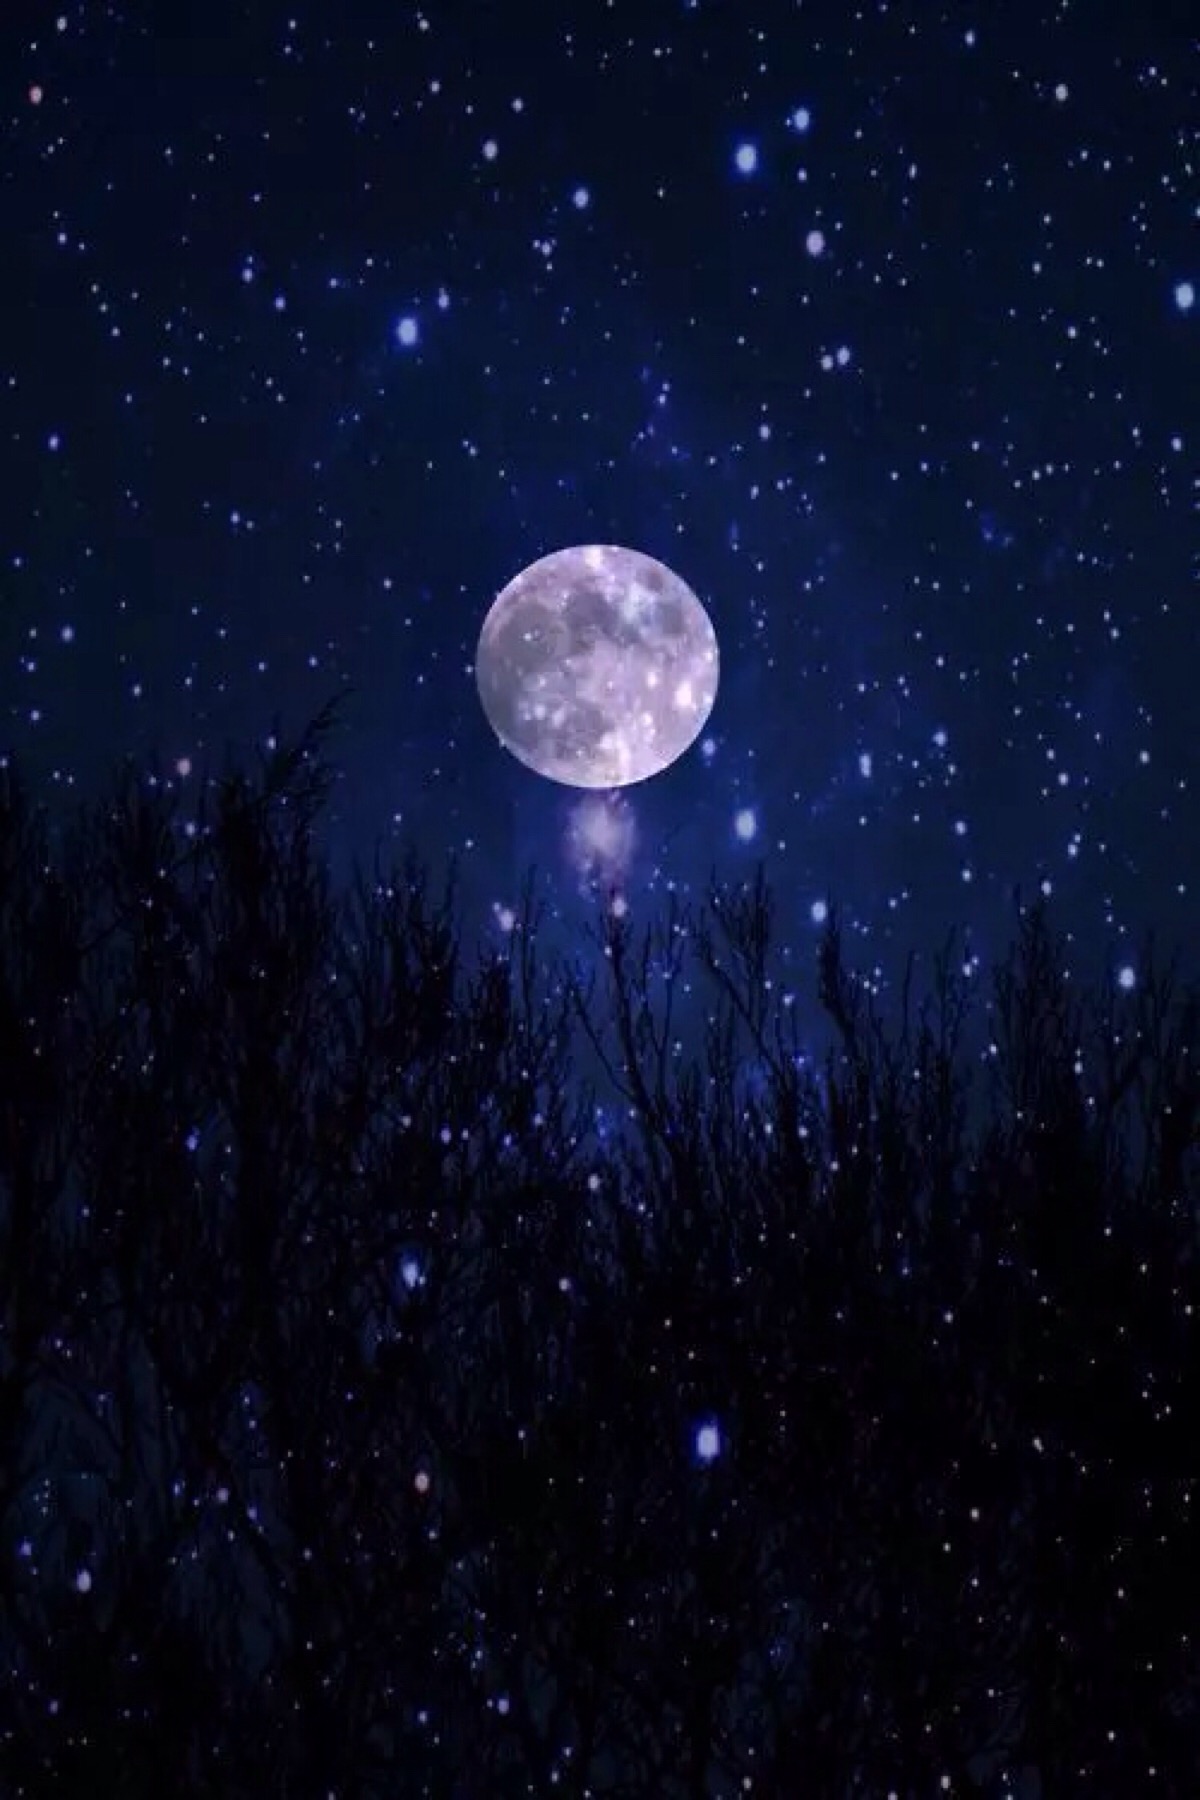 夜景 夜空 树木 星光 月光 明月 静谧 自然风景 iphone手机壁纸 唯美